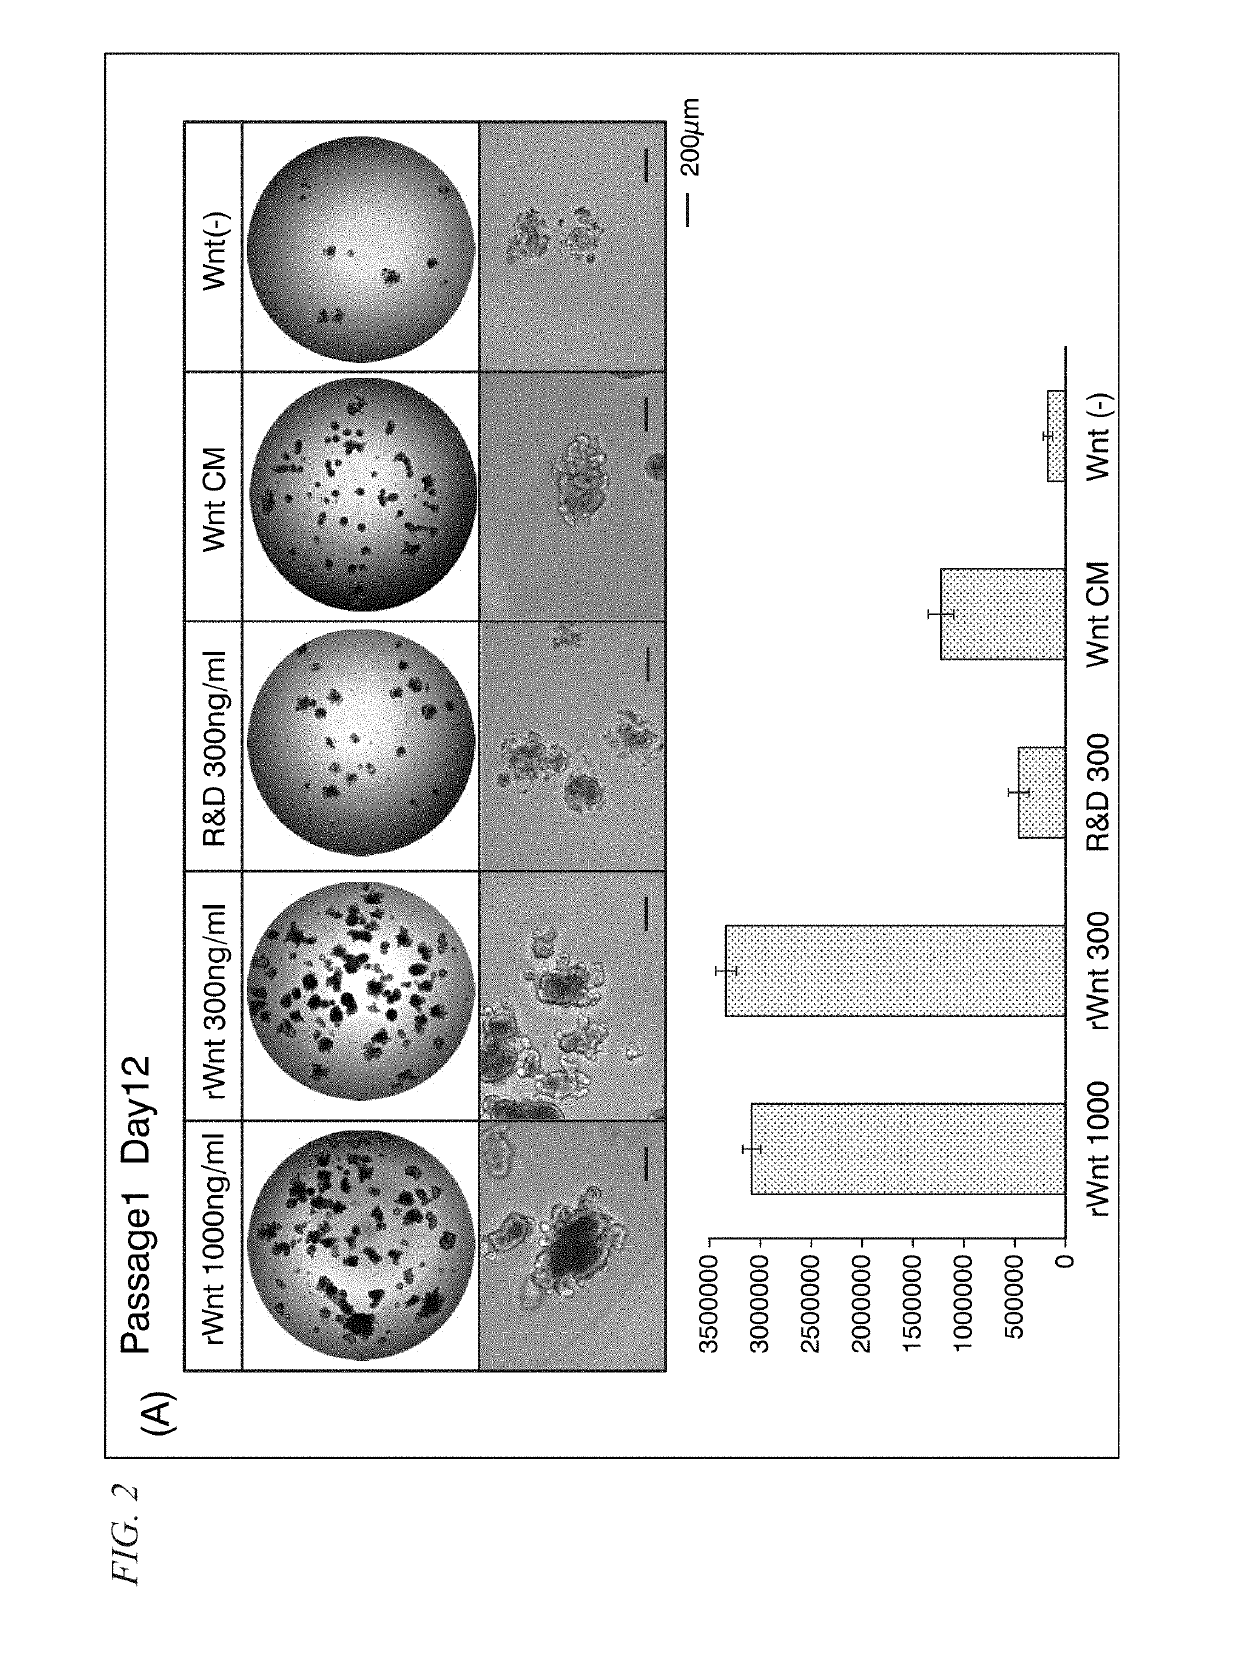 Cell culture medium, culture method, and organoid